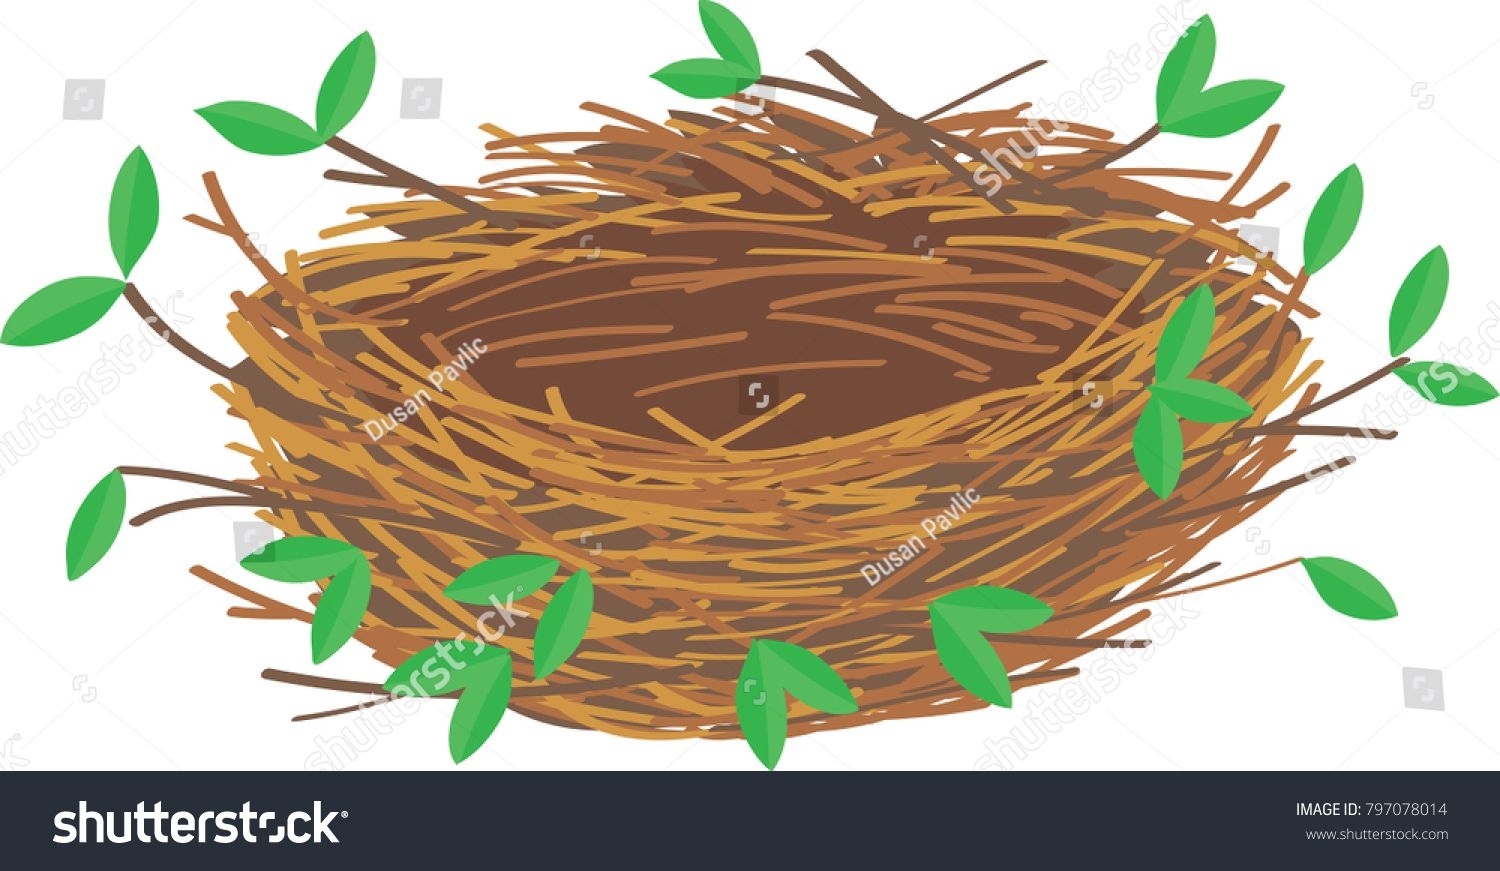 Птичье гнездо мультяшное